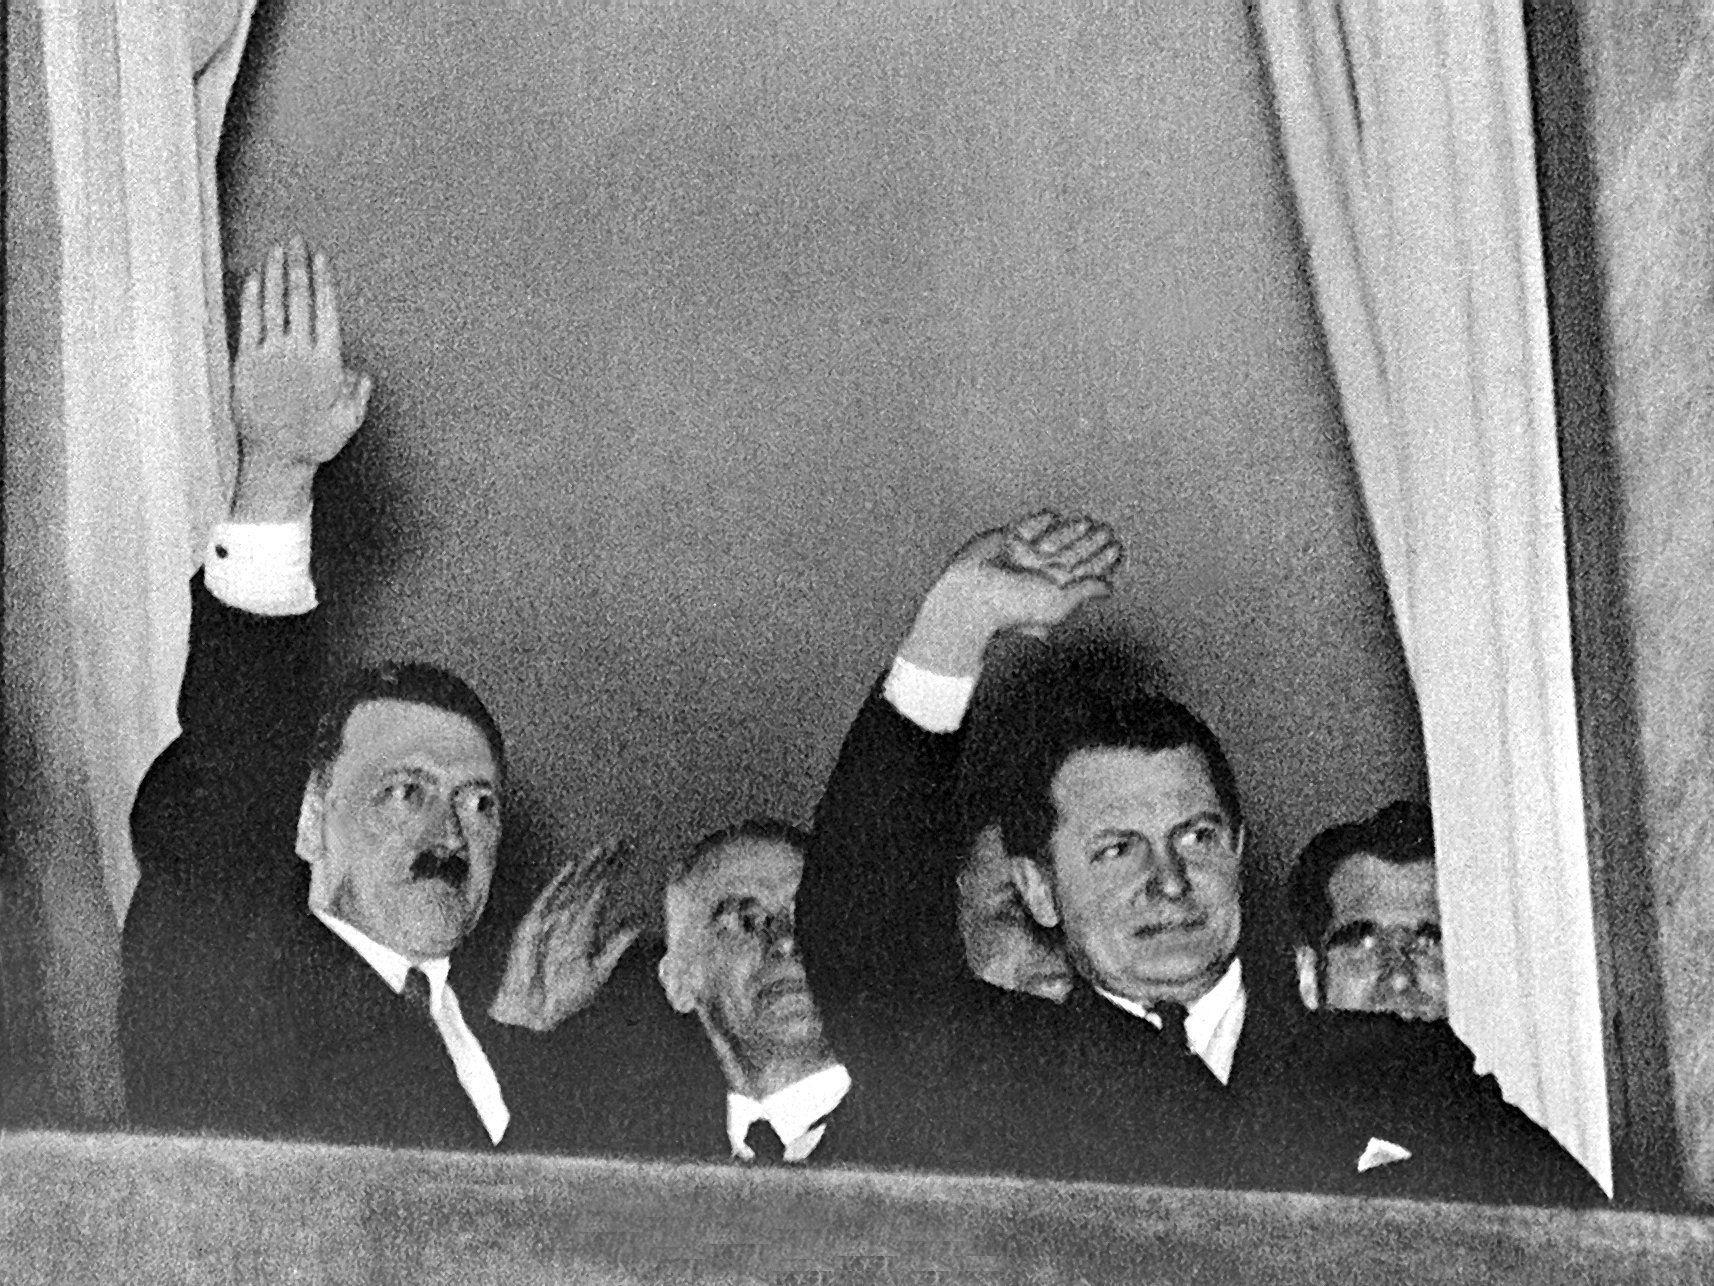 Der neu ernannte Reichskanzler Adolf Hitler (l) grüßt nach der Machtübernahme am 30. Januar 1933 aus einem Fenster in Berlin heraus den vorbeiziehenden Fackelzug.